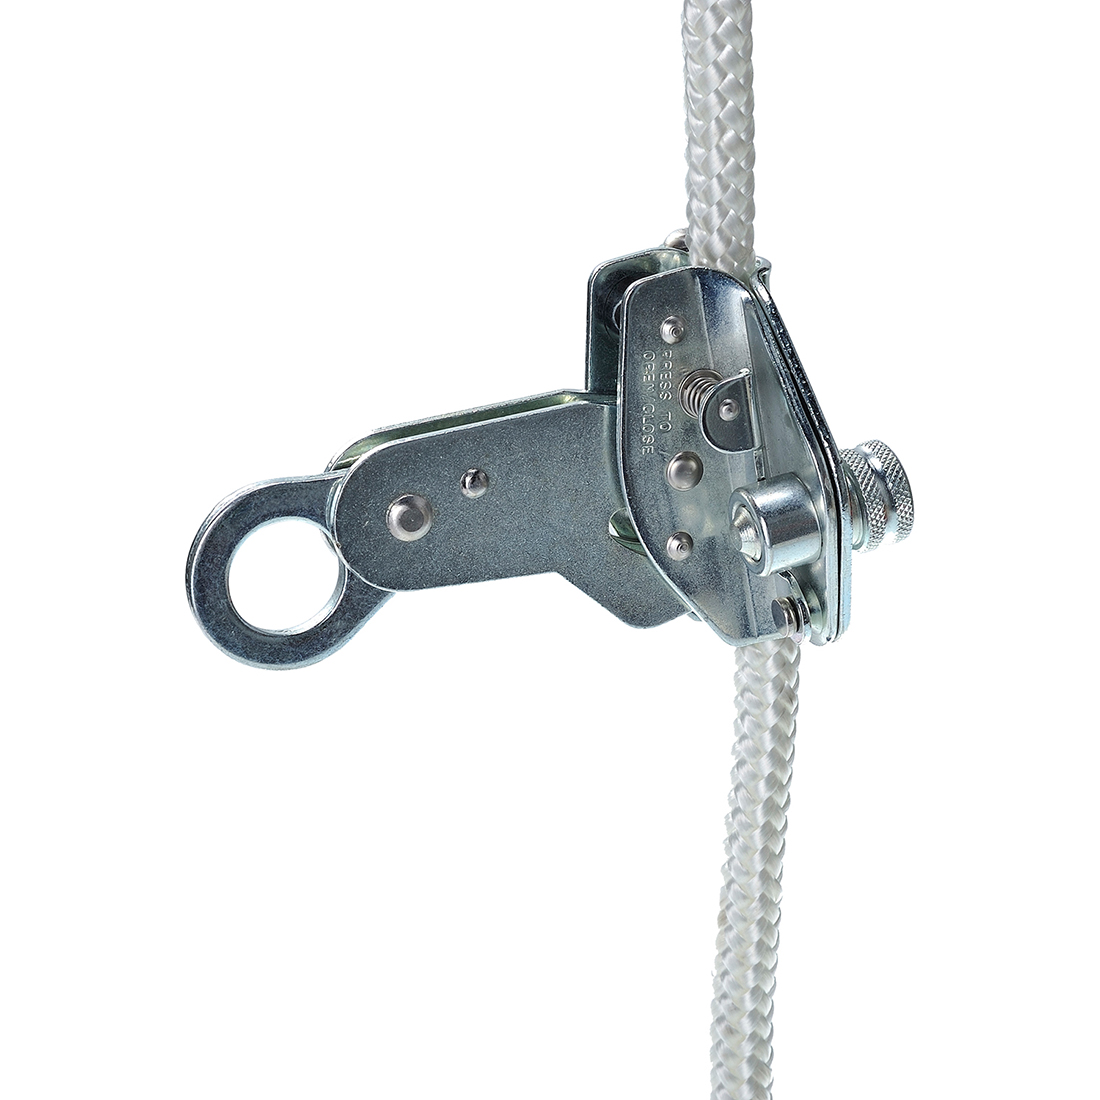 12mm Detachable Rope Grab - Silver